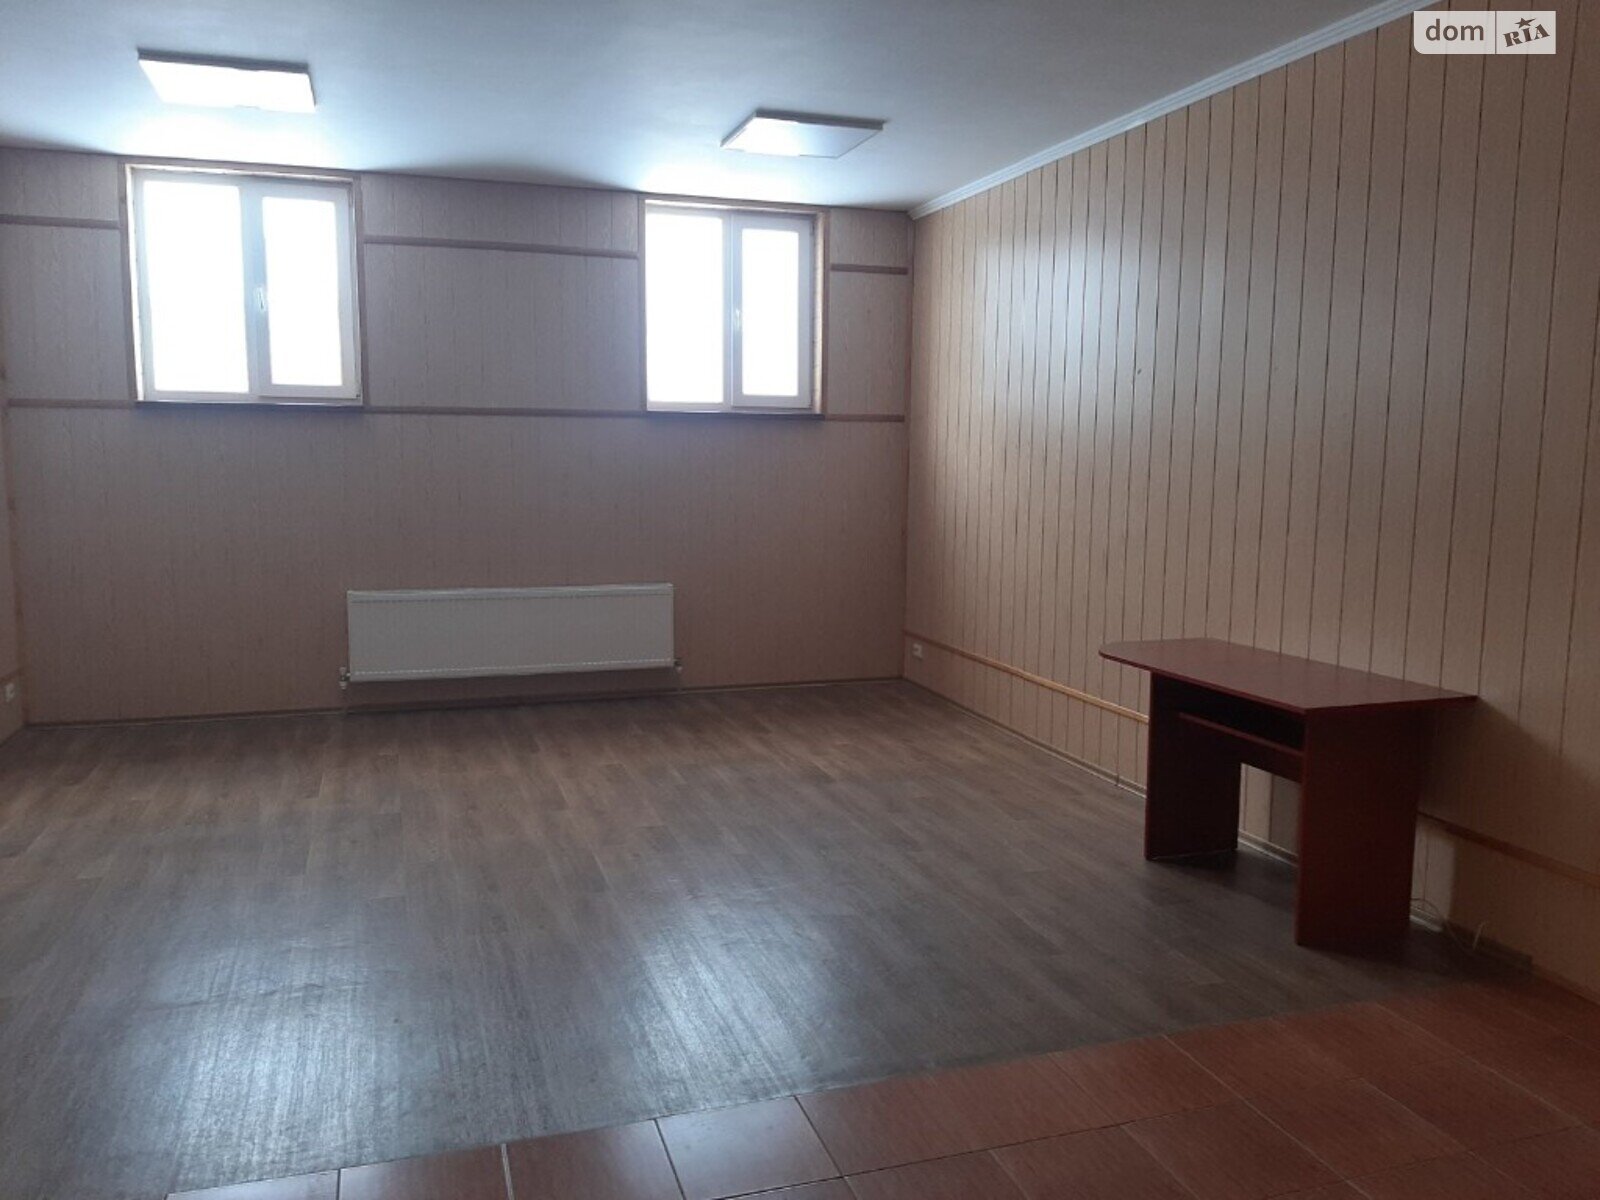 Аренда офисного помещения в Виннице, Академика Янгеля улица 4, помещений - 1, этаж - 2 фото 1